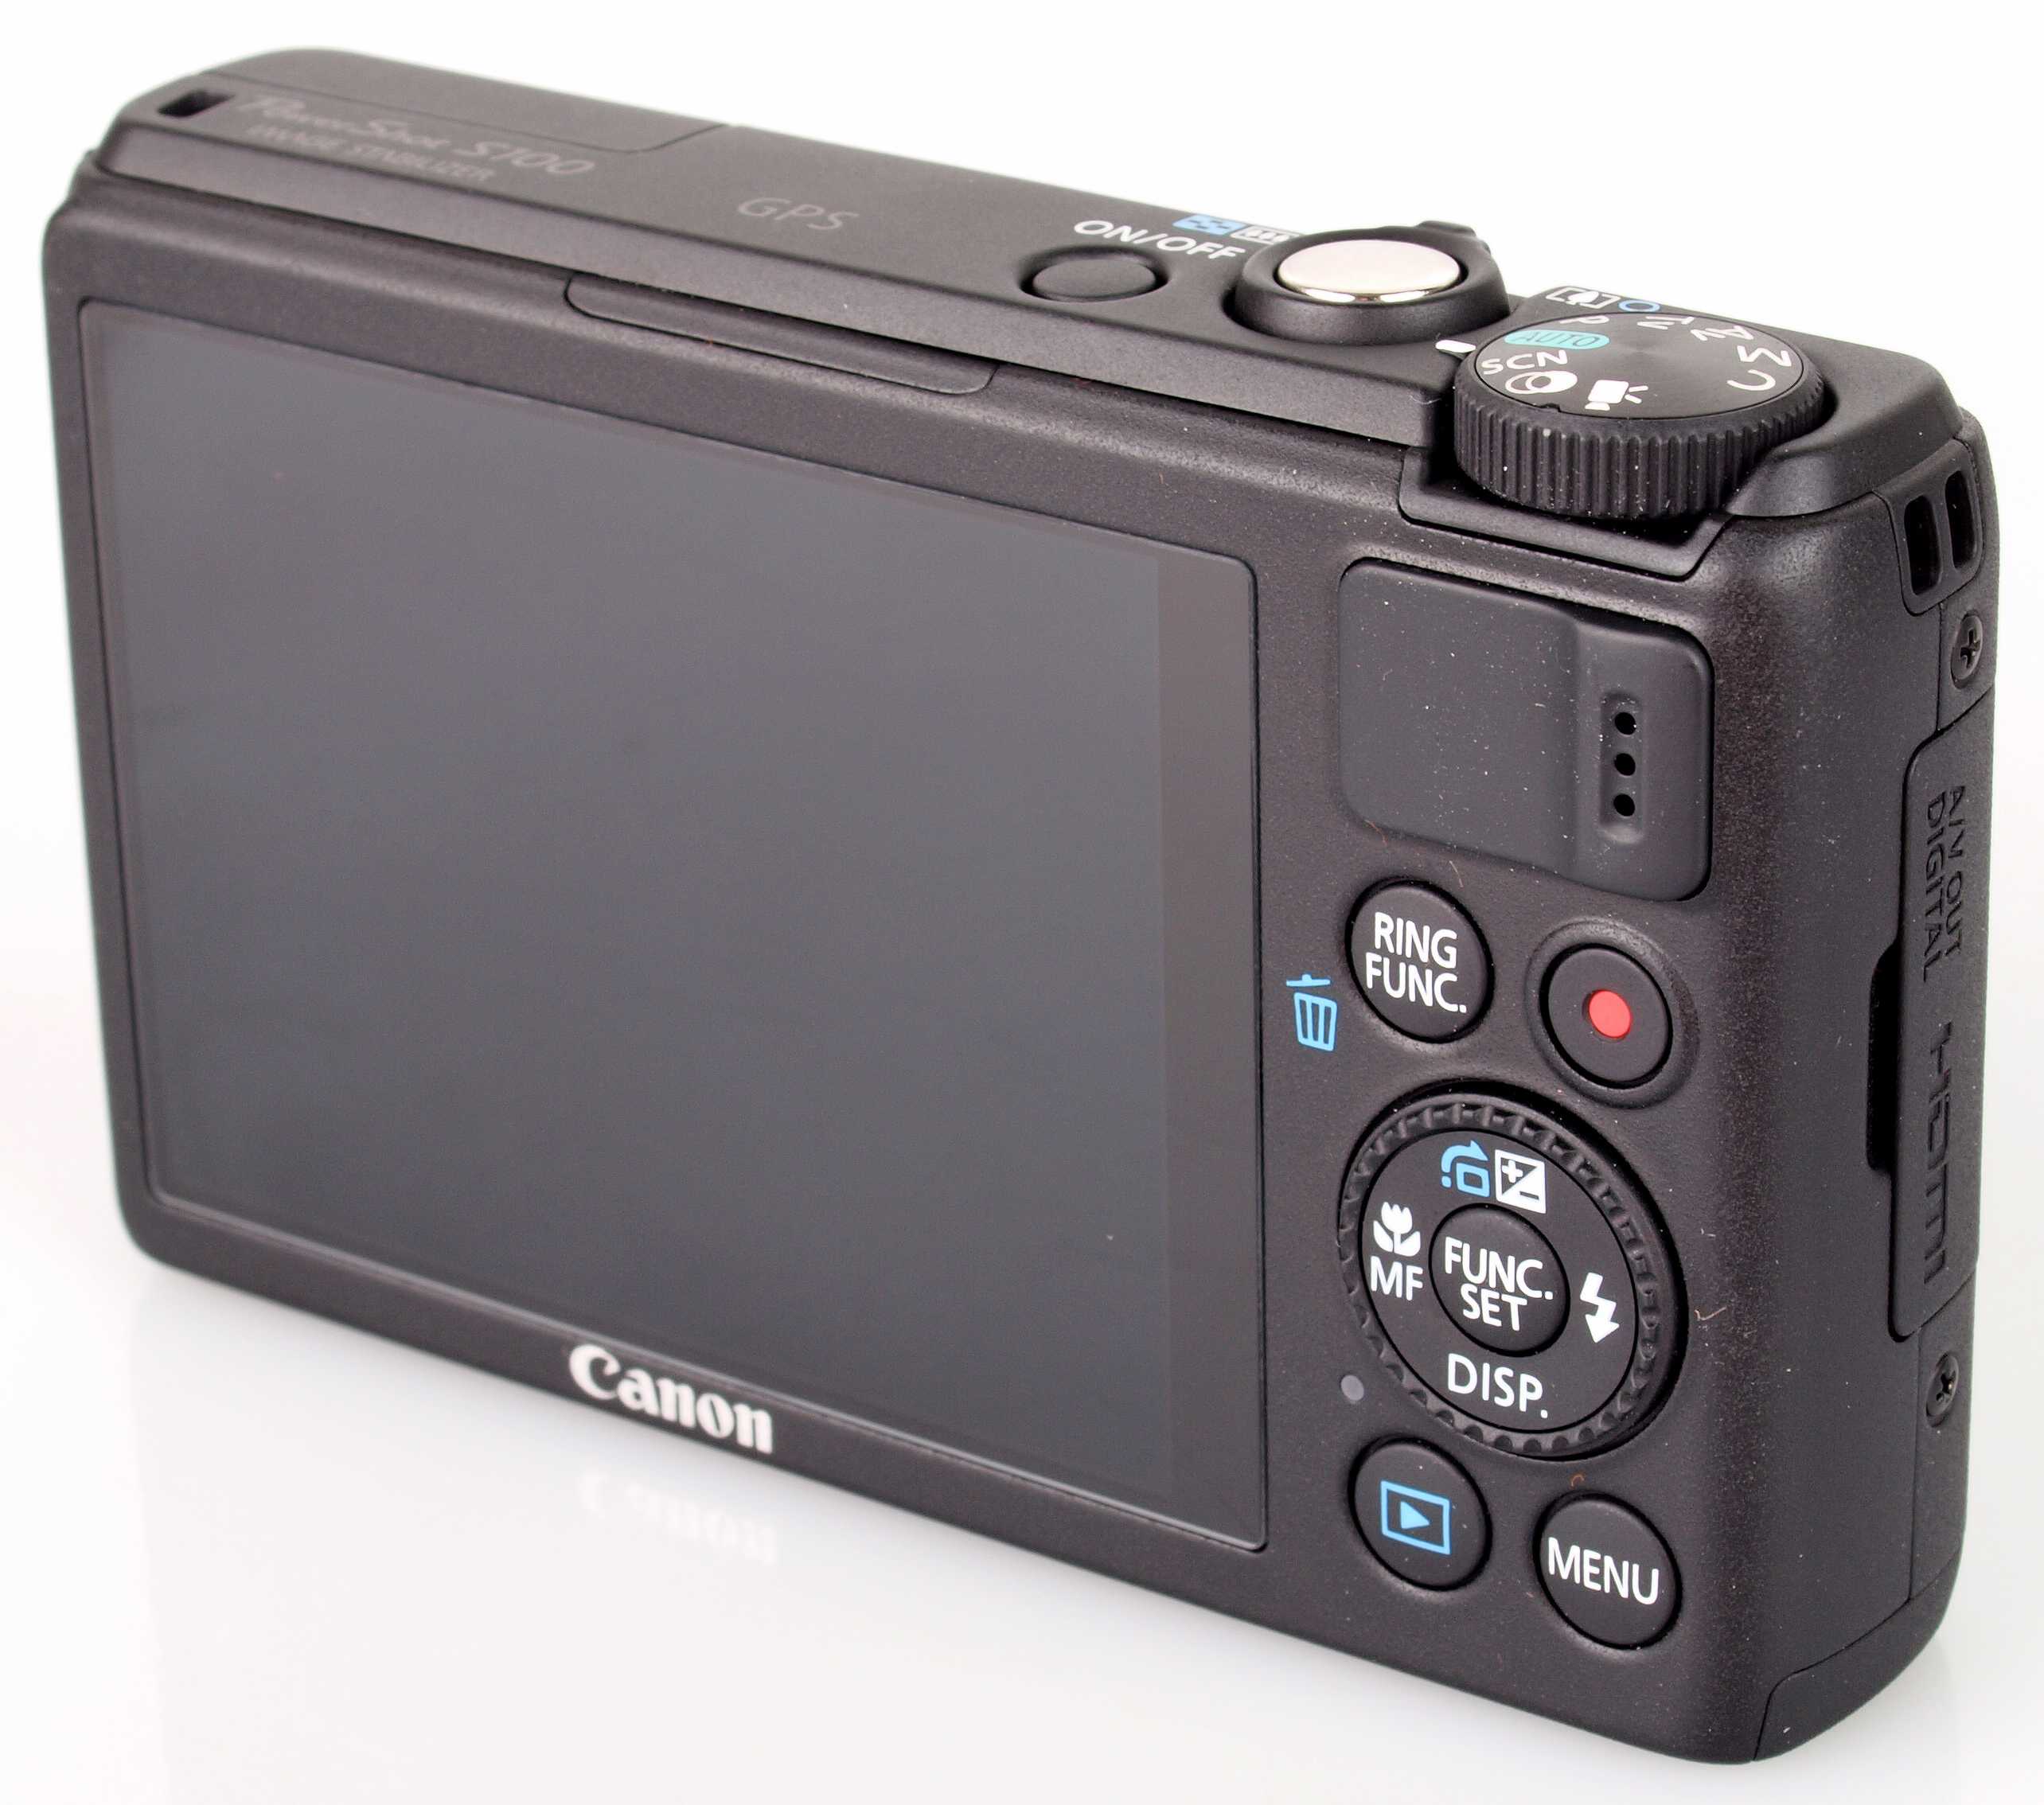 Canon powershot s100 (черный) - купить , скидки, цена, отзывы, обзор, характеристики - фотоаппараты цифровые